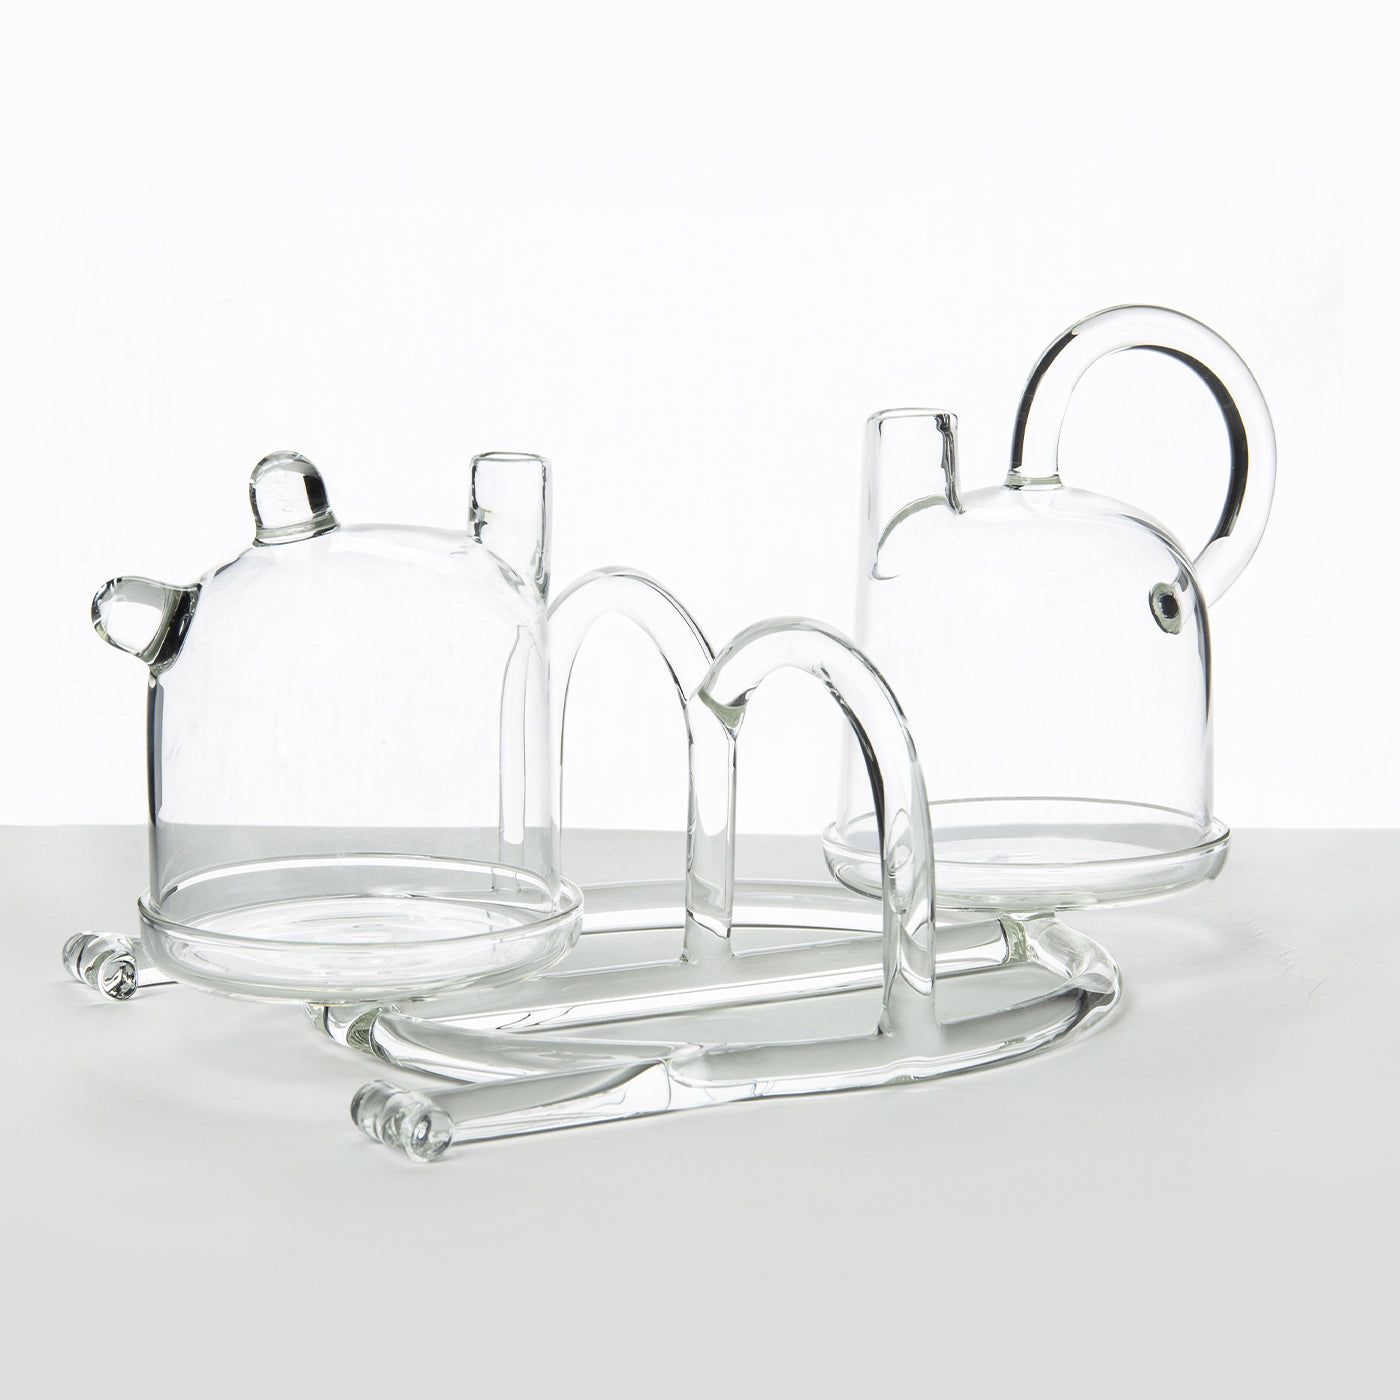 Oil & Vinegar - SiO2 Tableware Glass Collection - Alternative view 3